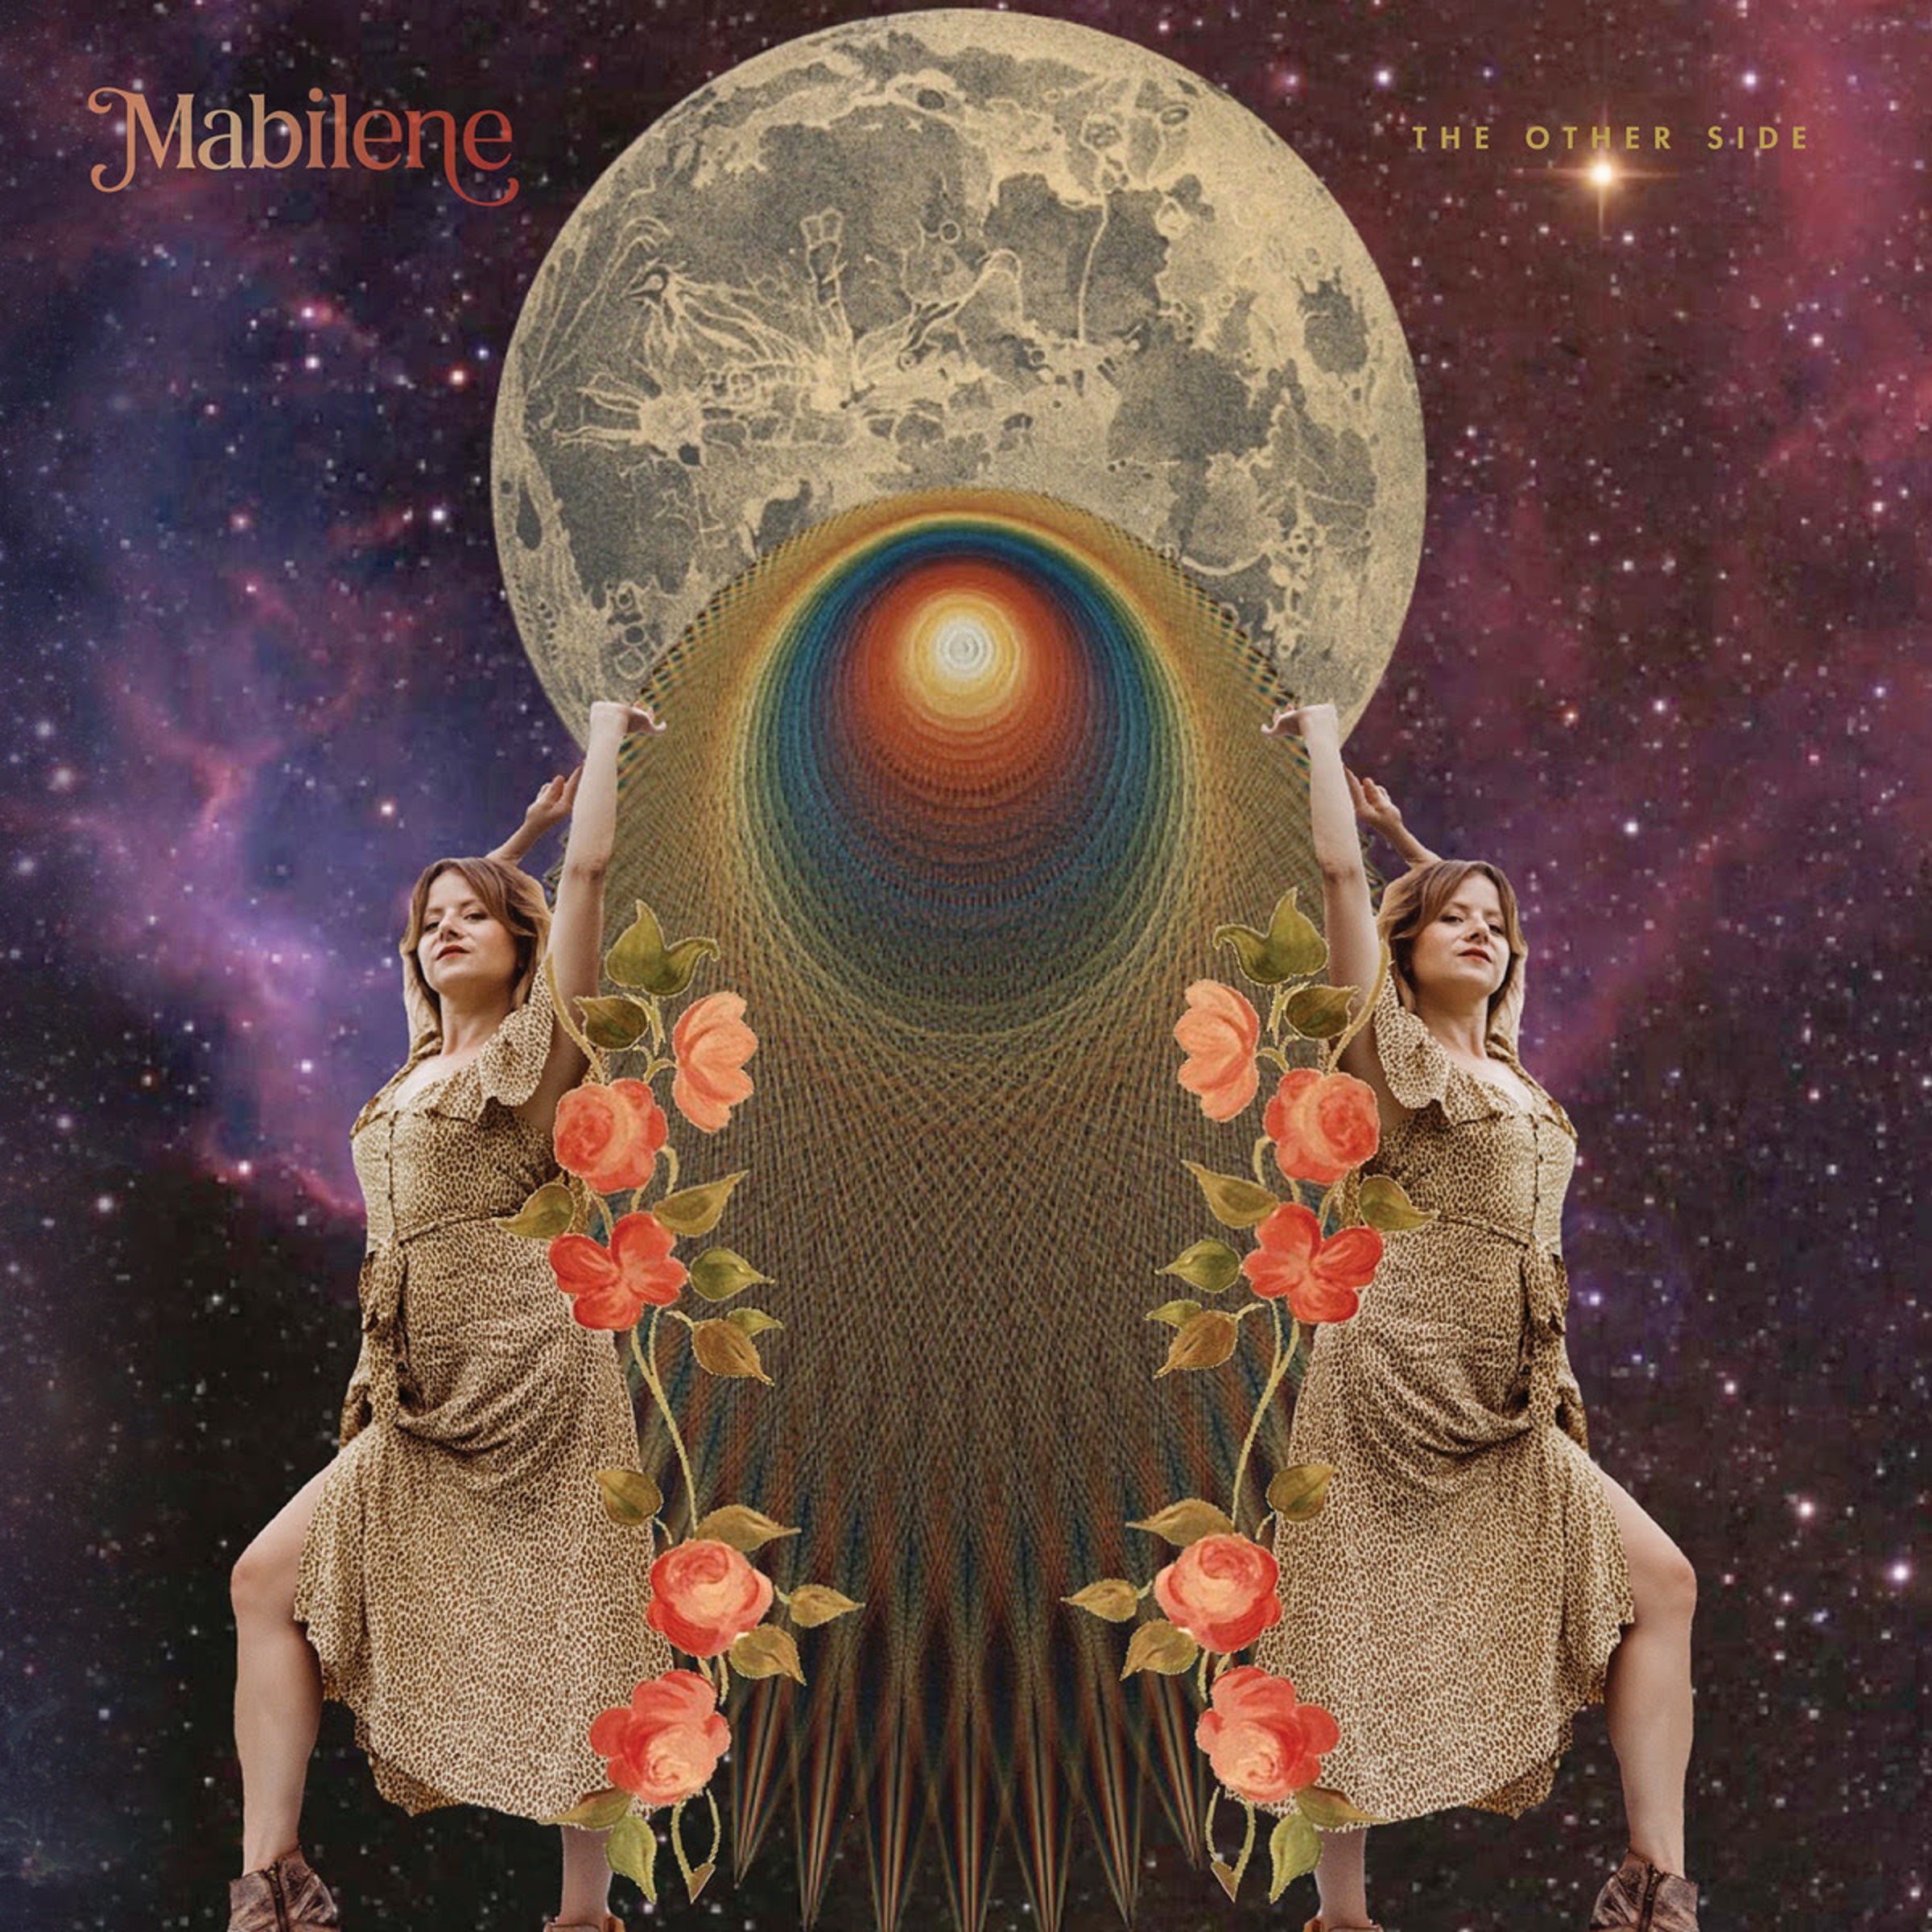 NASHVILLE'S MABILENE RELEASES DEBUT LP